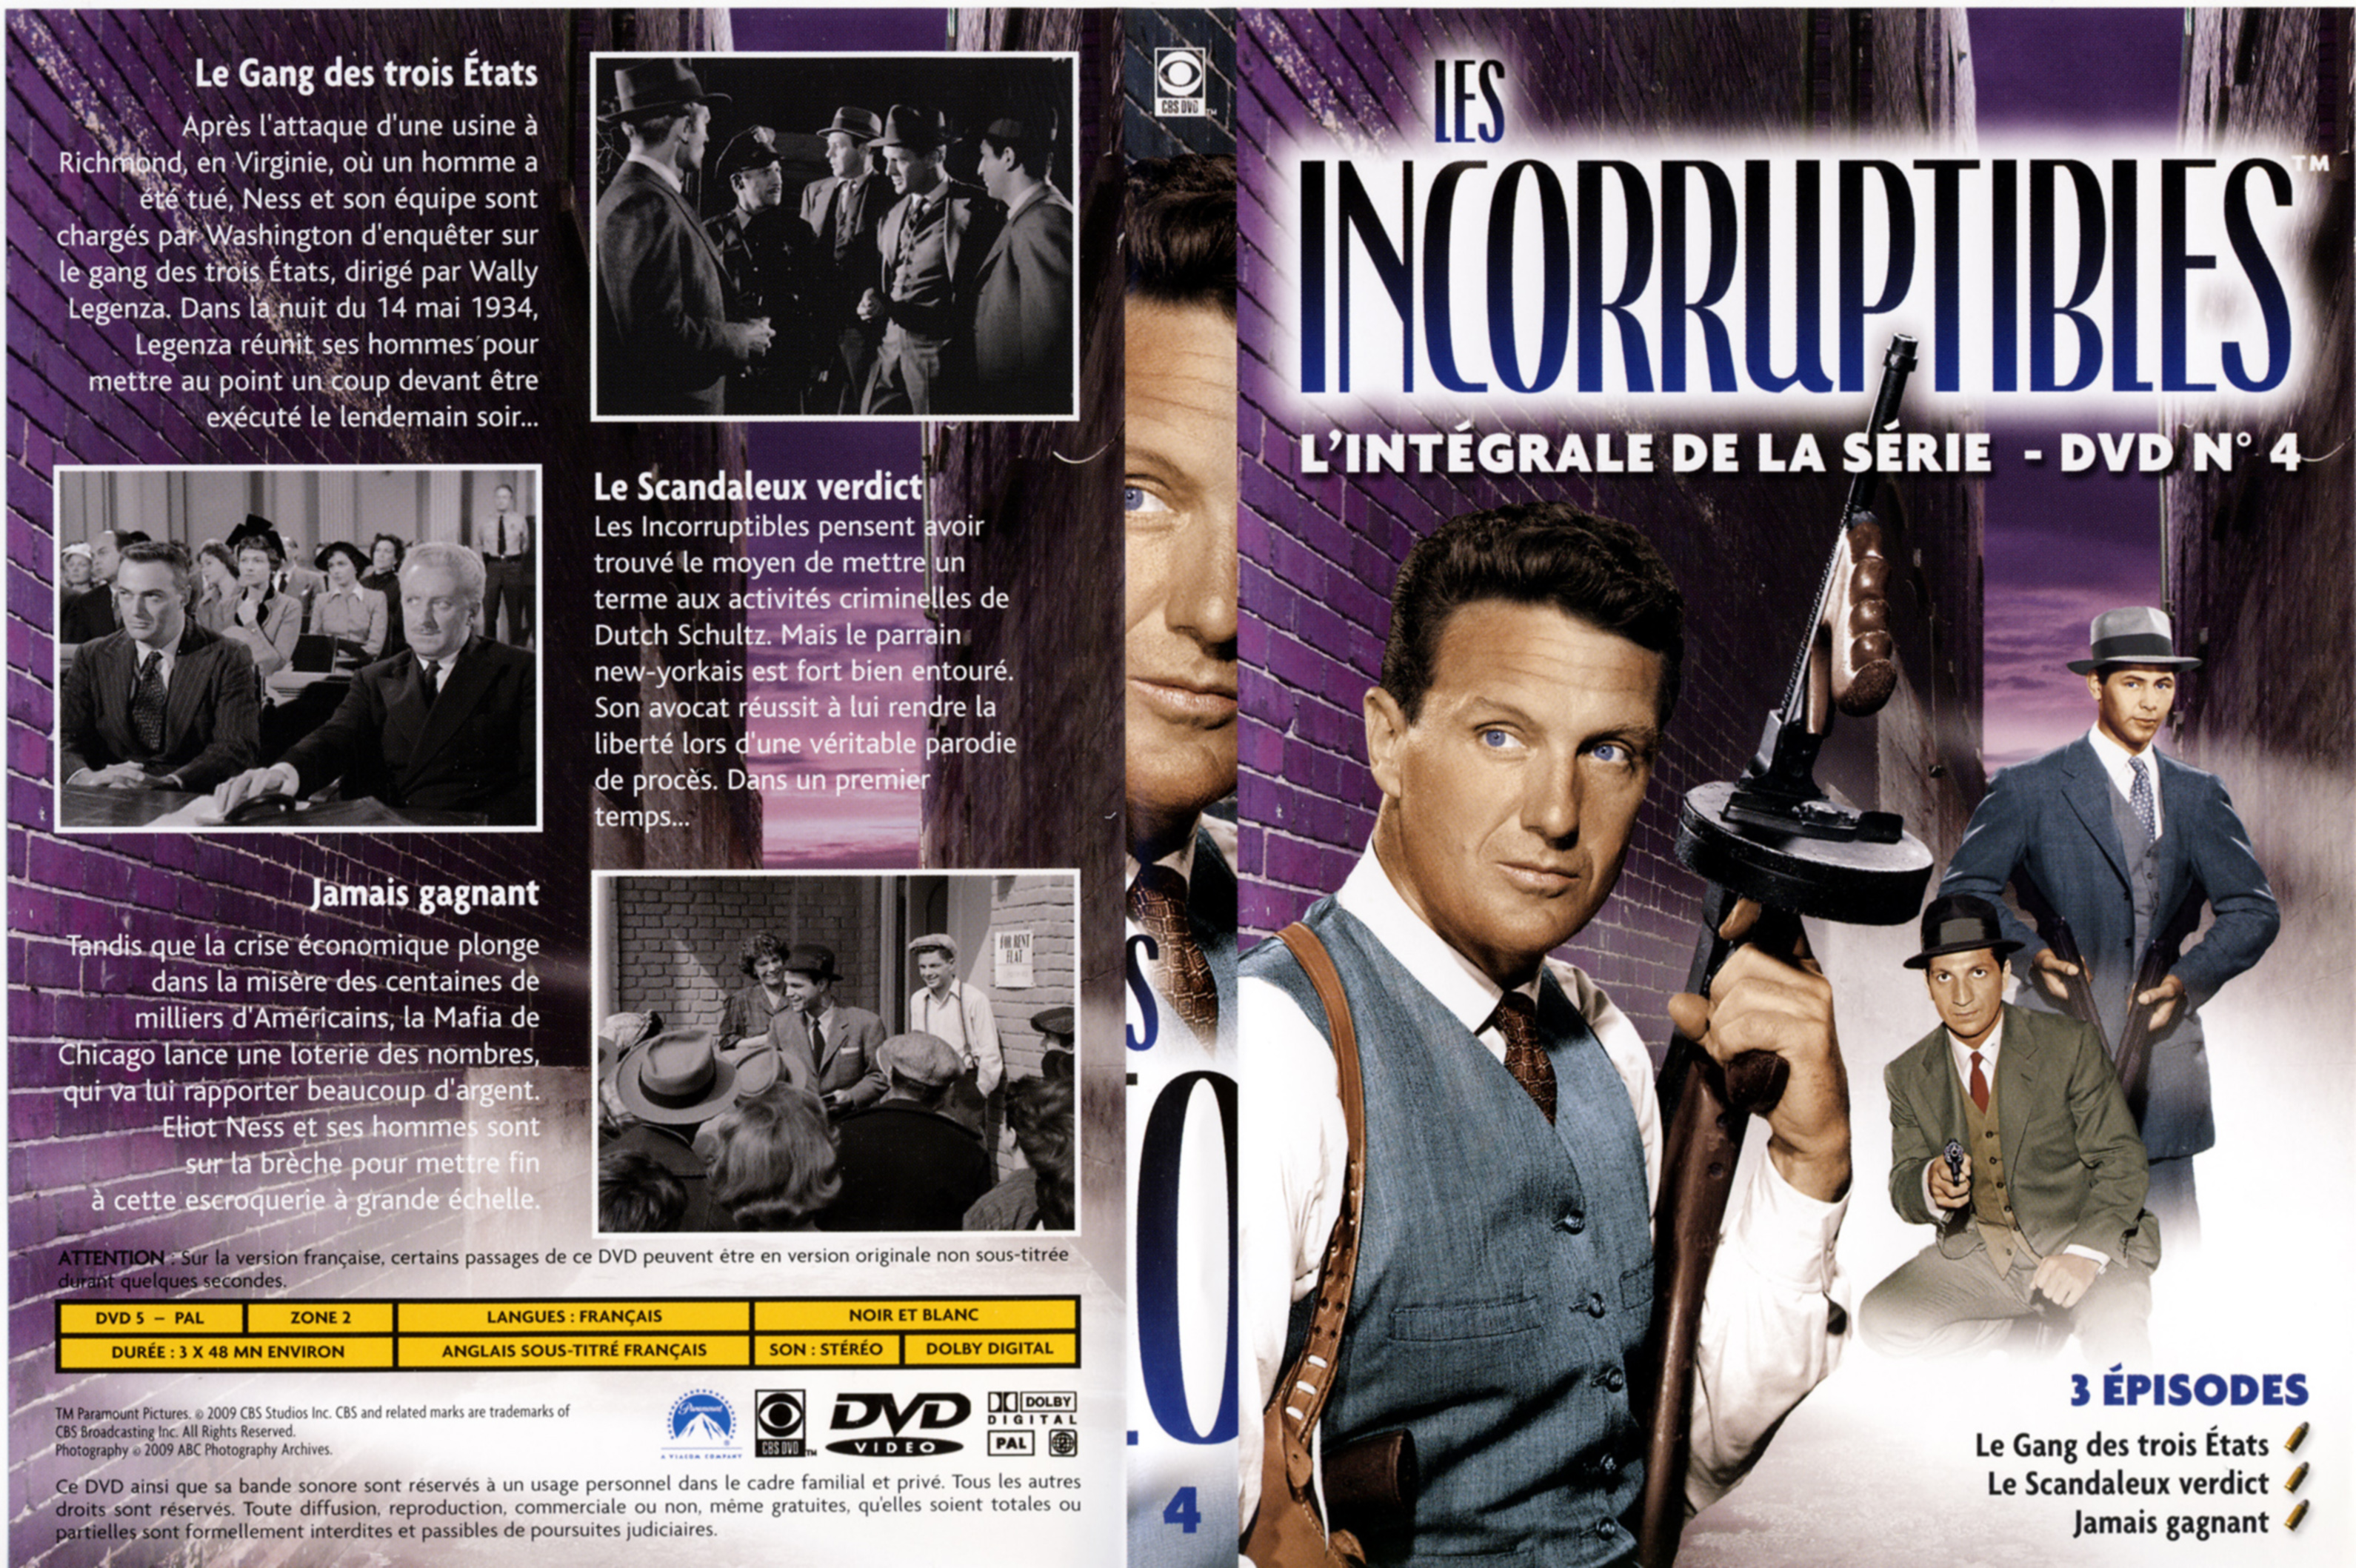 Jaquette DVD Les incorruptibles intgrale DVD 04